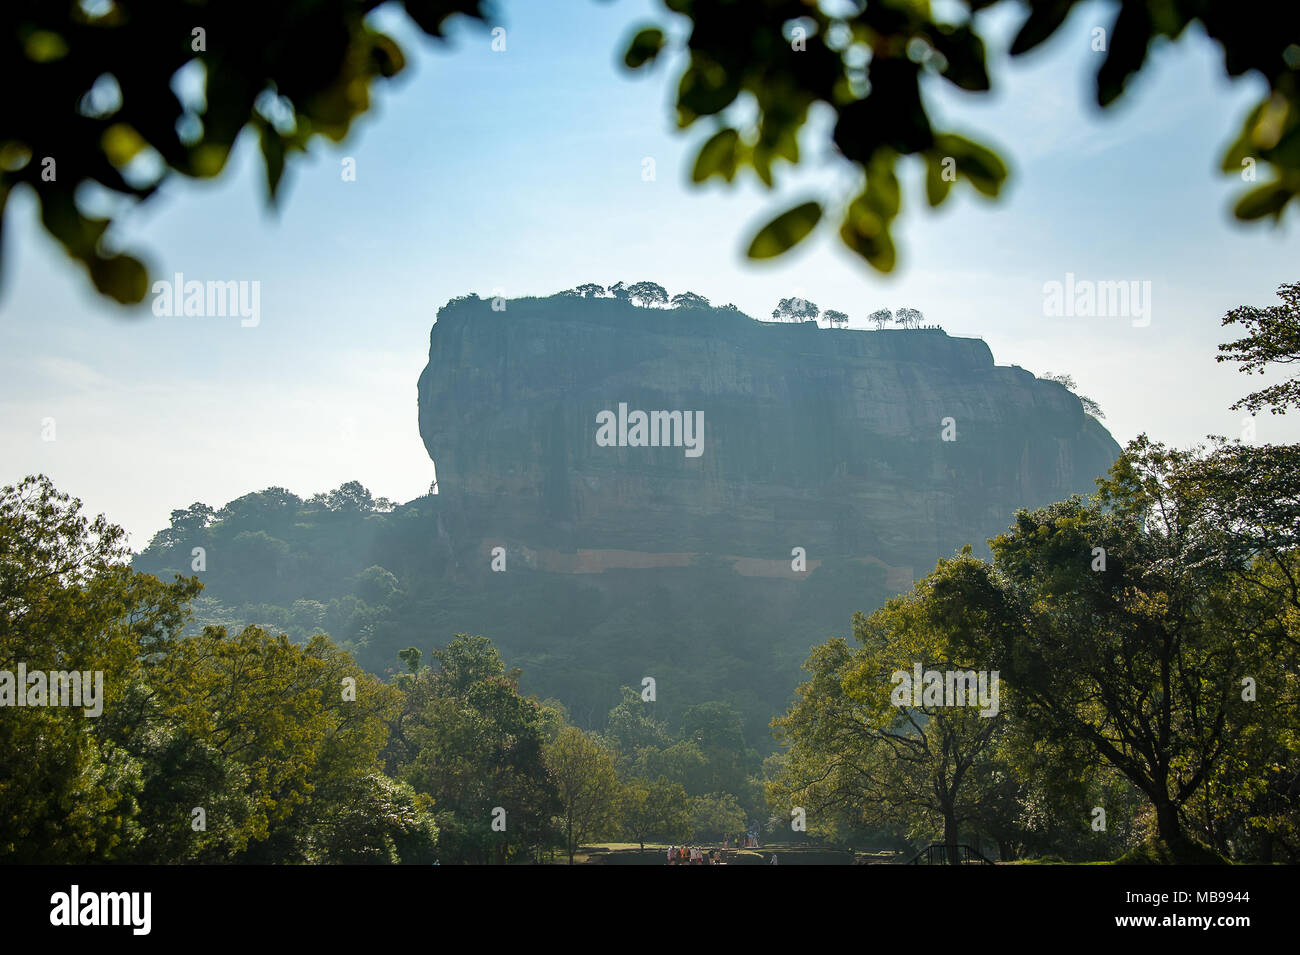 Schöne Aussicht nach Sigiriya-Felsen (Lion Rock) durch die Bäume. Sigiriya ist eine alte Festung und UNESCO-Weltkulturerbe in der Nähe von Dambulla, Sri Lanka Stockfoto